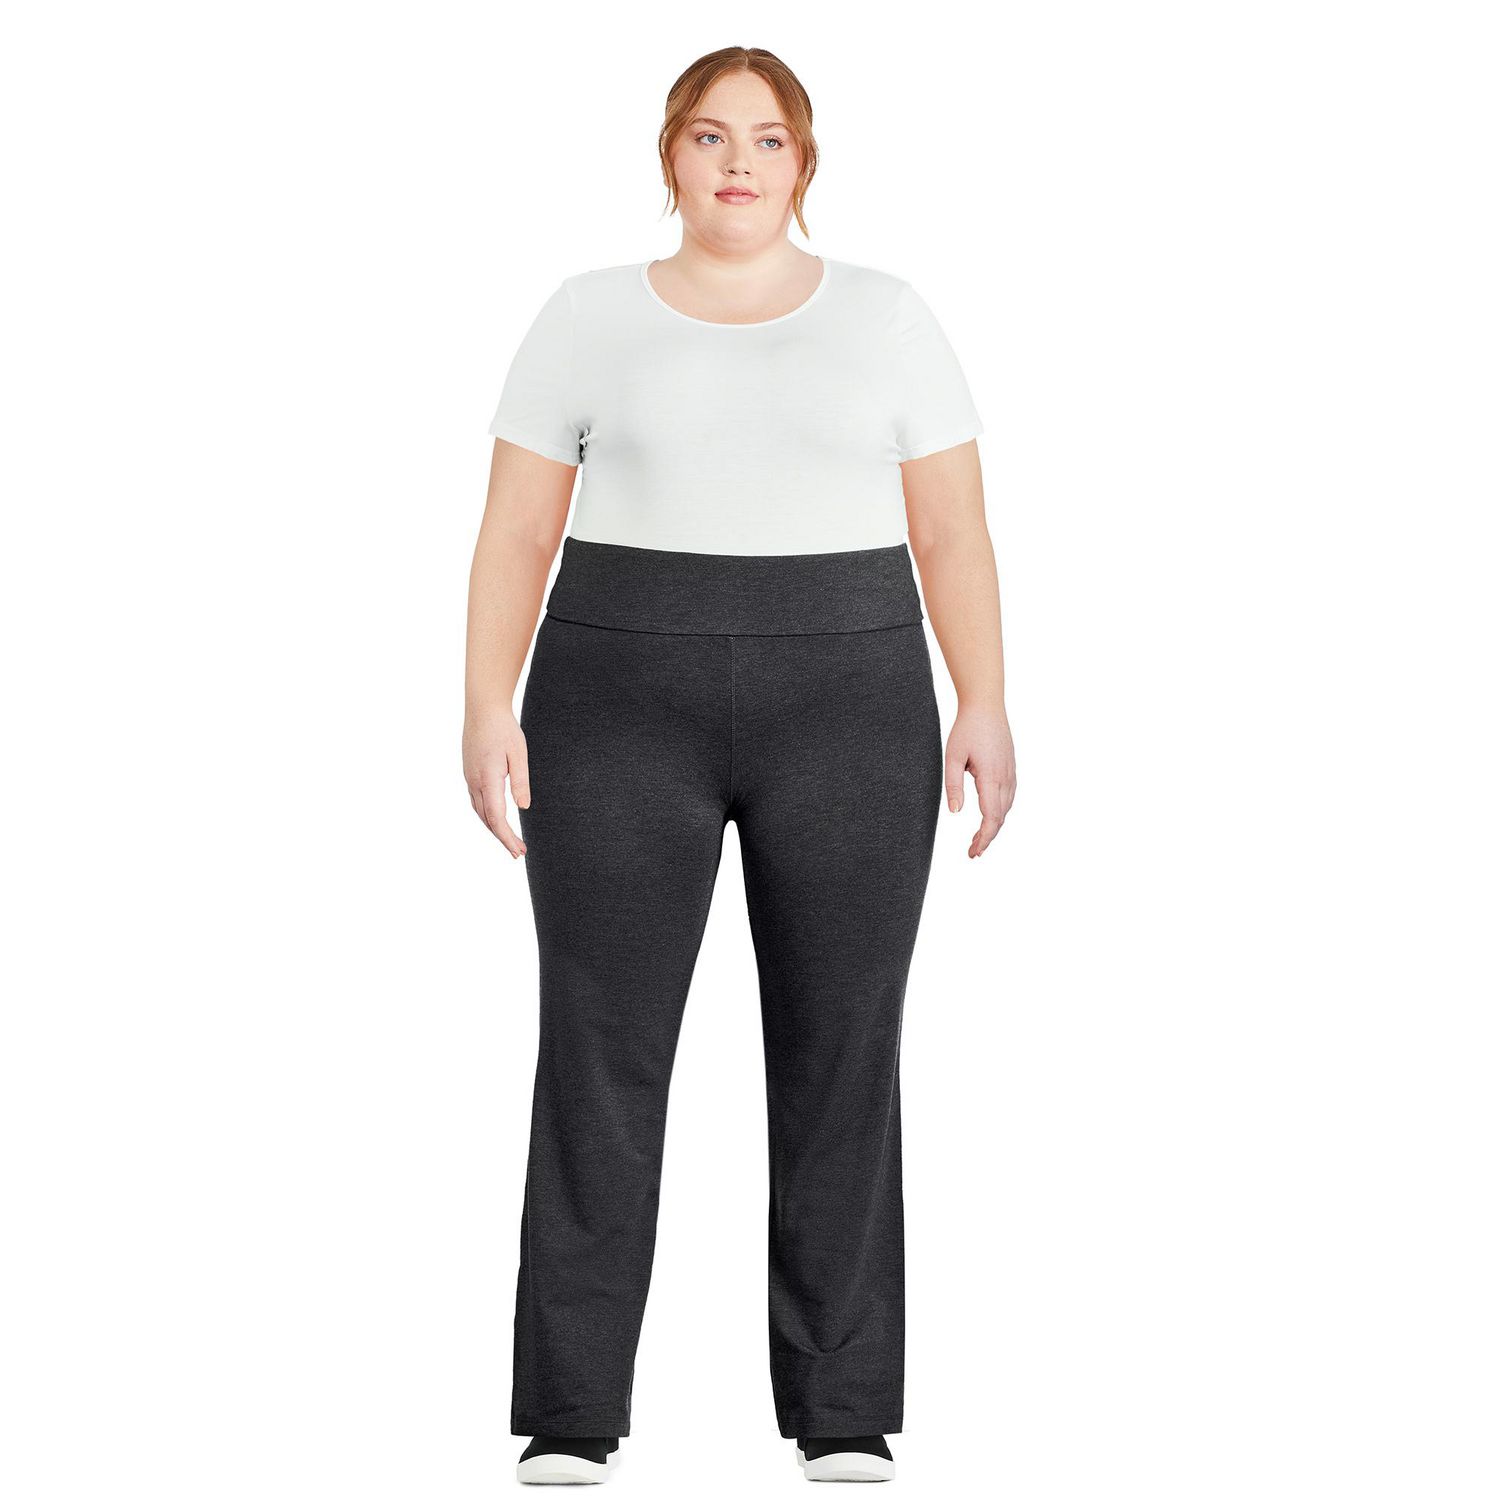 Danskin Women's Plus SizeDanskin Sleek Fit Yoga Pant, Charcoal, 1X